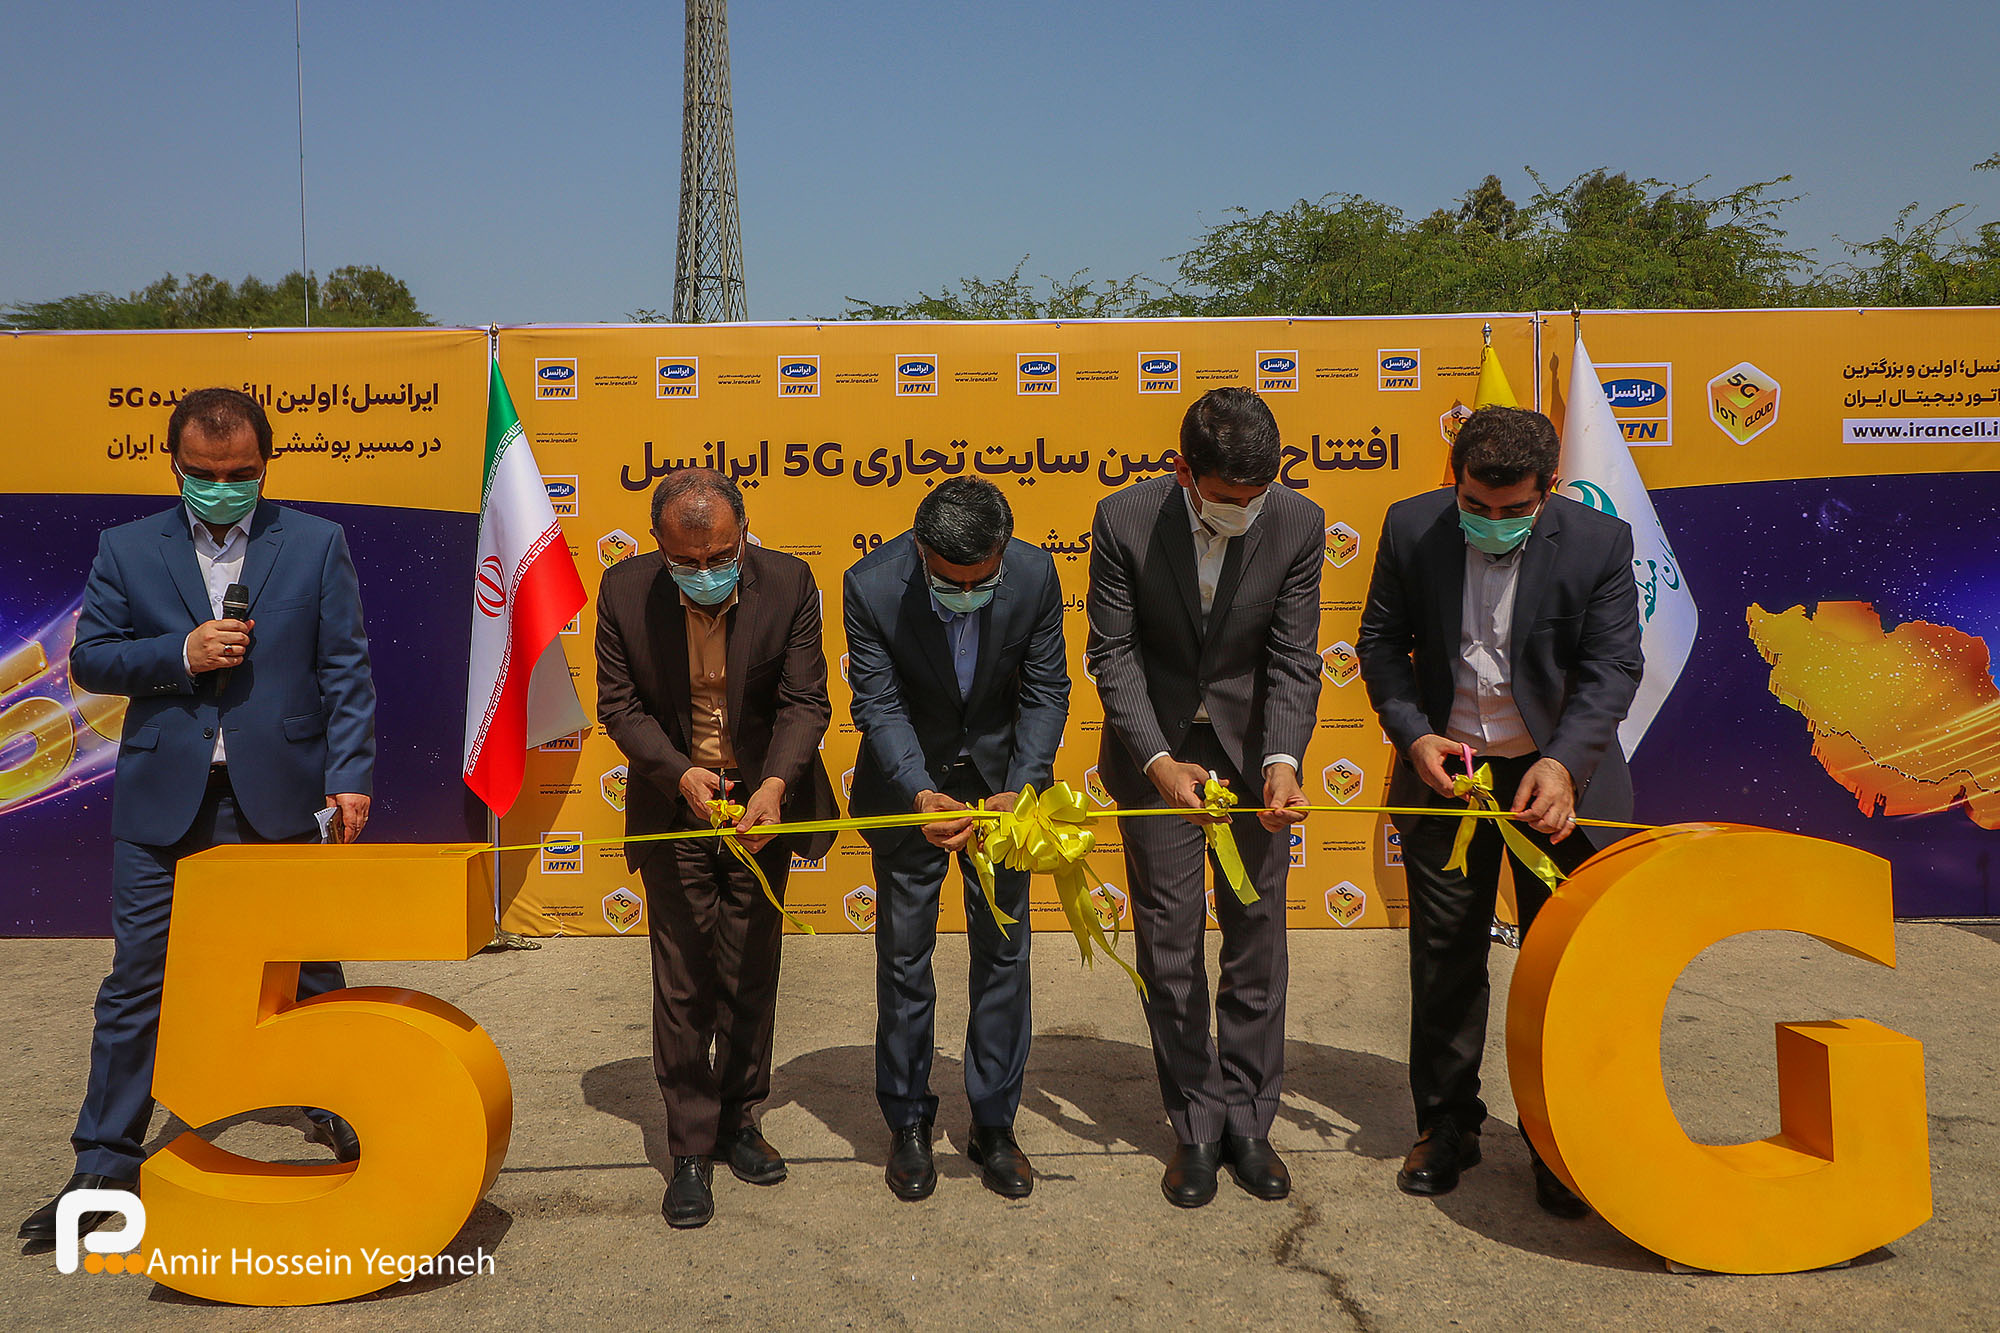 گزارش تصویری / آیین افتتاح نخستین سایت نسل پنجم تلفن همراه ( 5G) در کیش